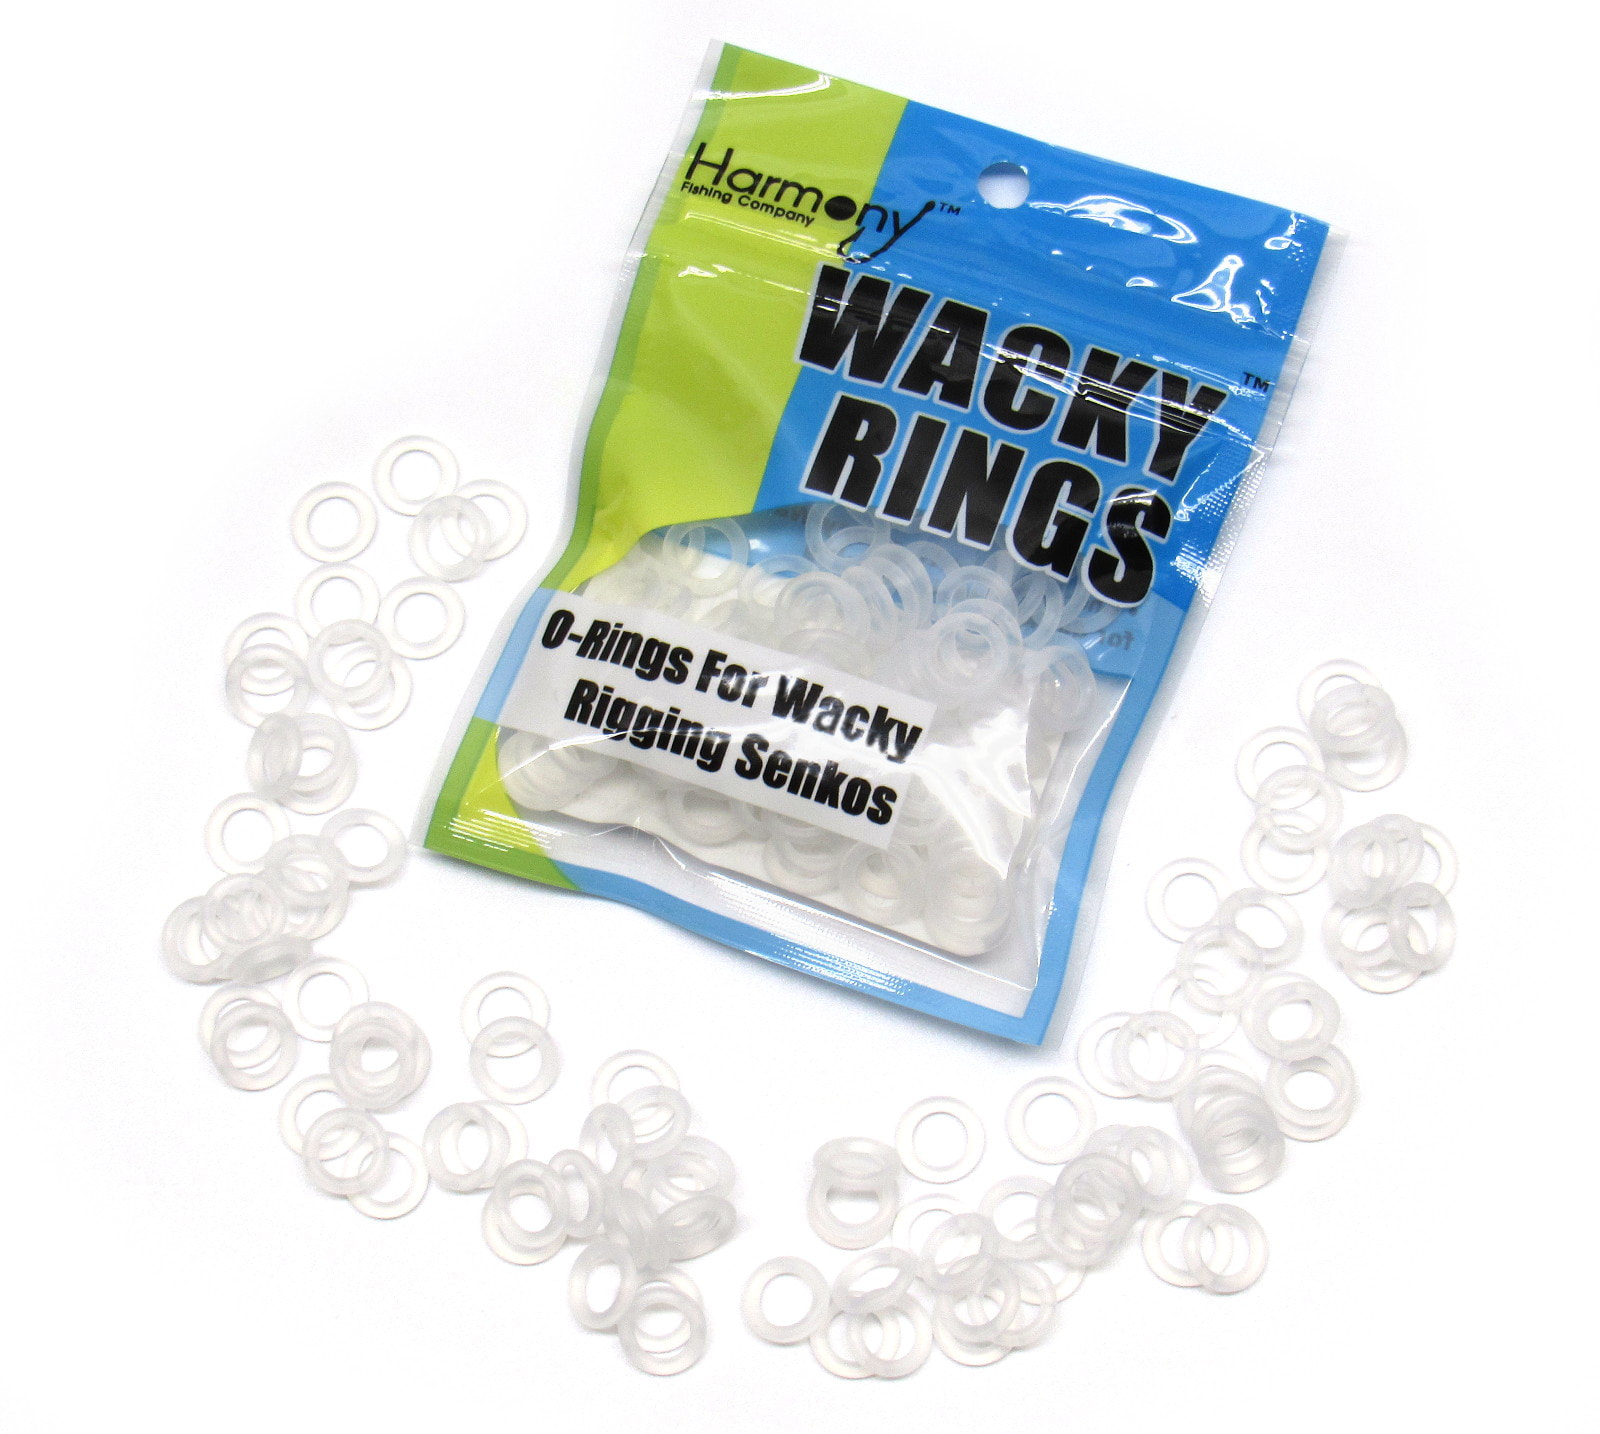 WHITE O-Rings For Wacky Rigging Senko Bass Fishing Worms 100 pcs - 4&5" Senko 